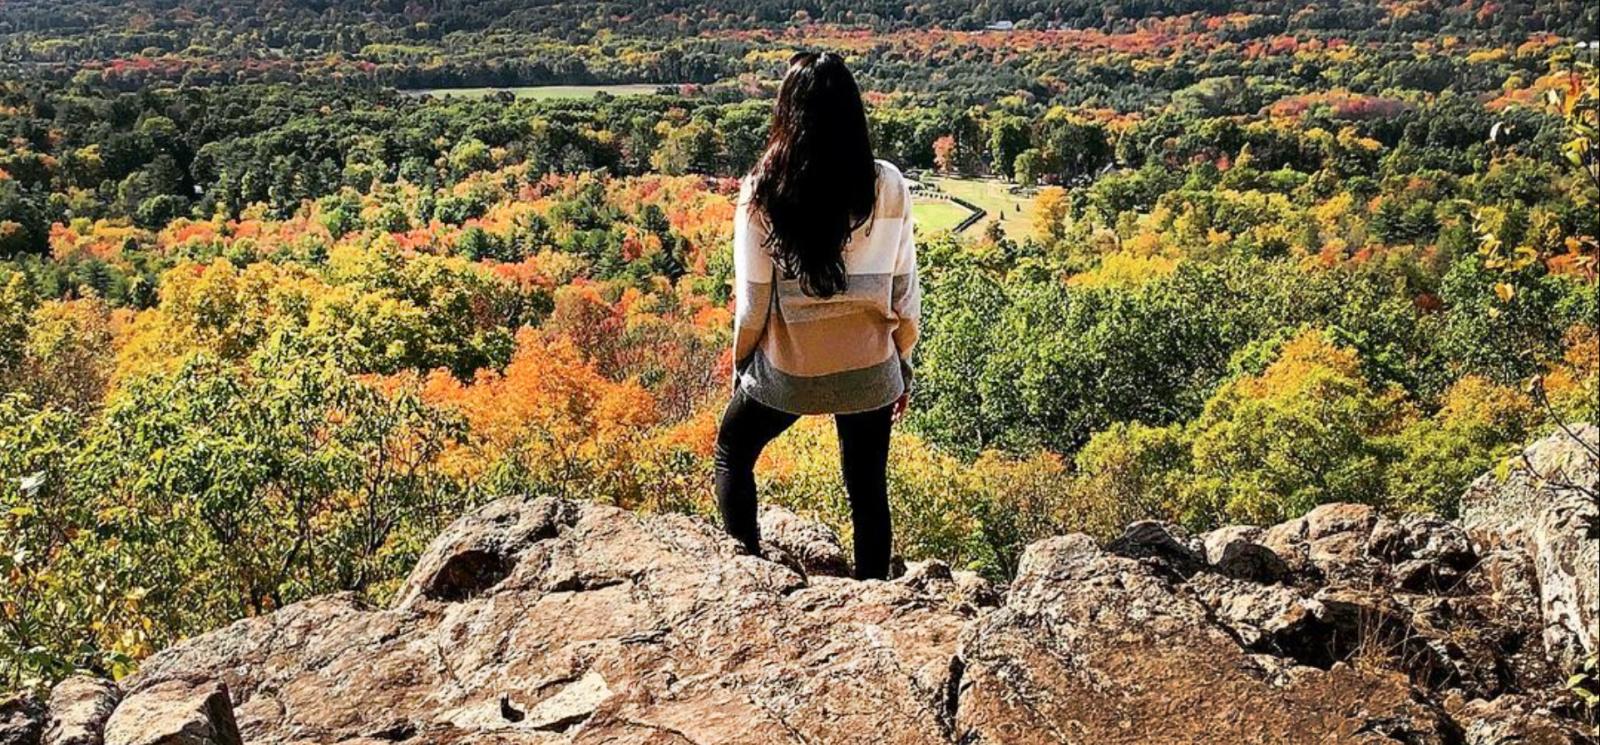 Una mujer se para en una roca con vista al paisaje otoñal (Instagram@fromramonawlove)